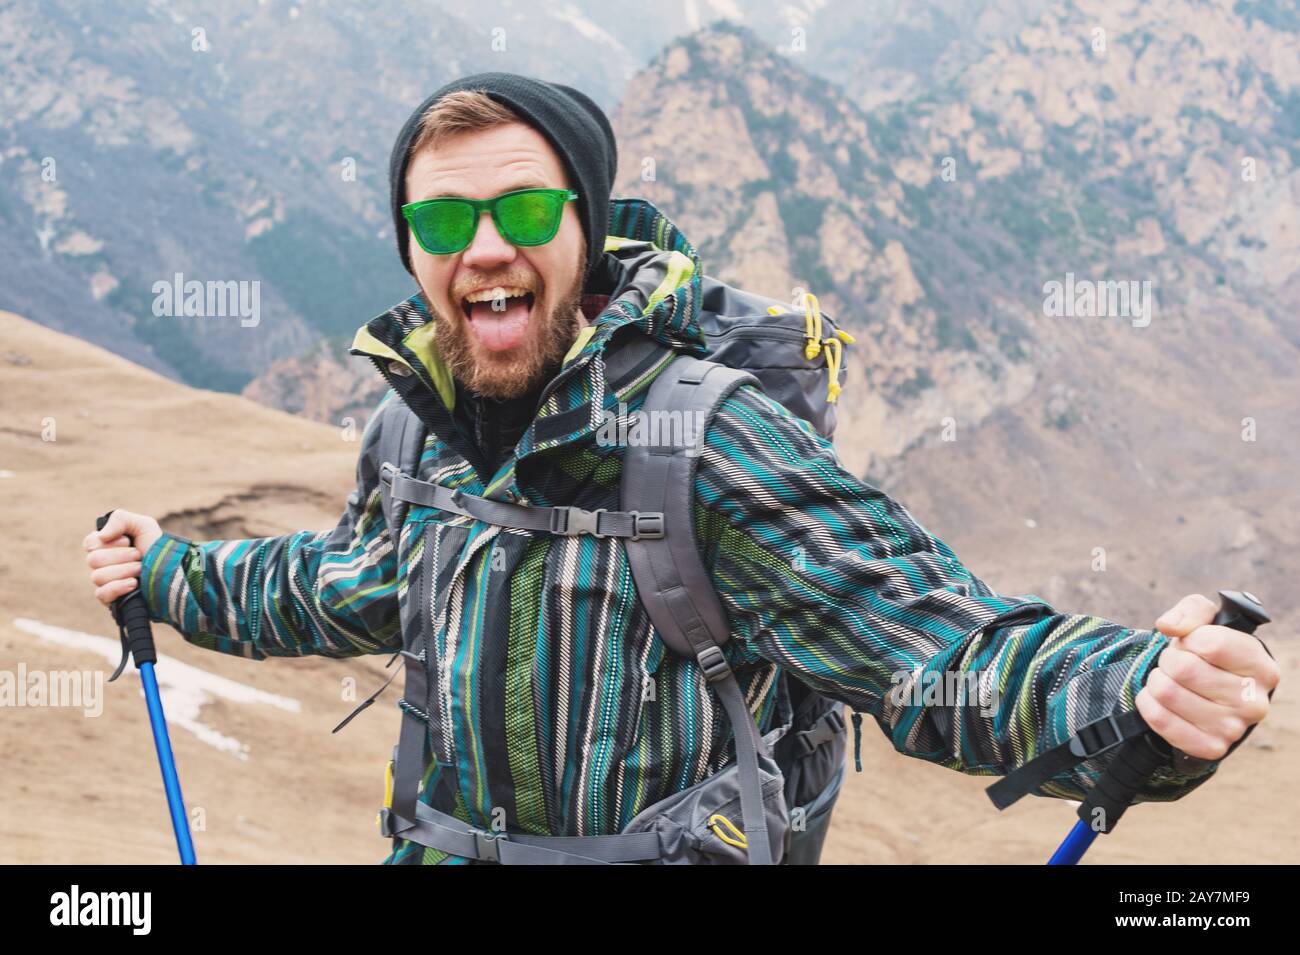 Un gars qui ressemble à un hipster montre sa langue et hurle dans les montagnes, étirant ses mains dans différentes directions Banque D'Images